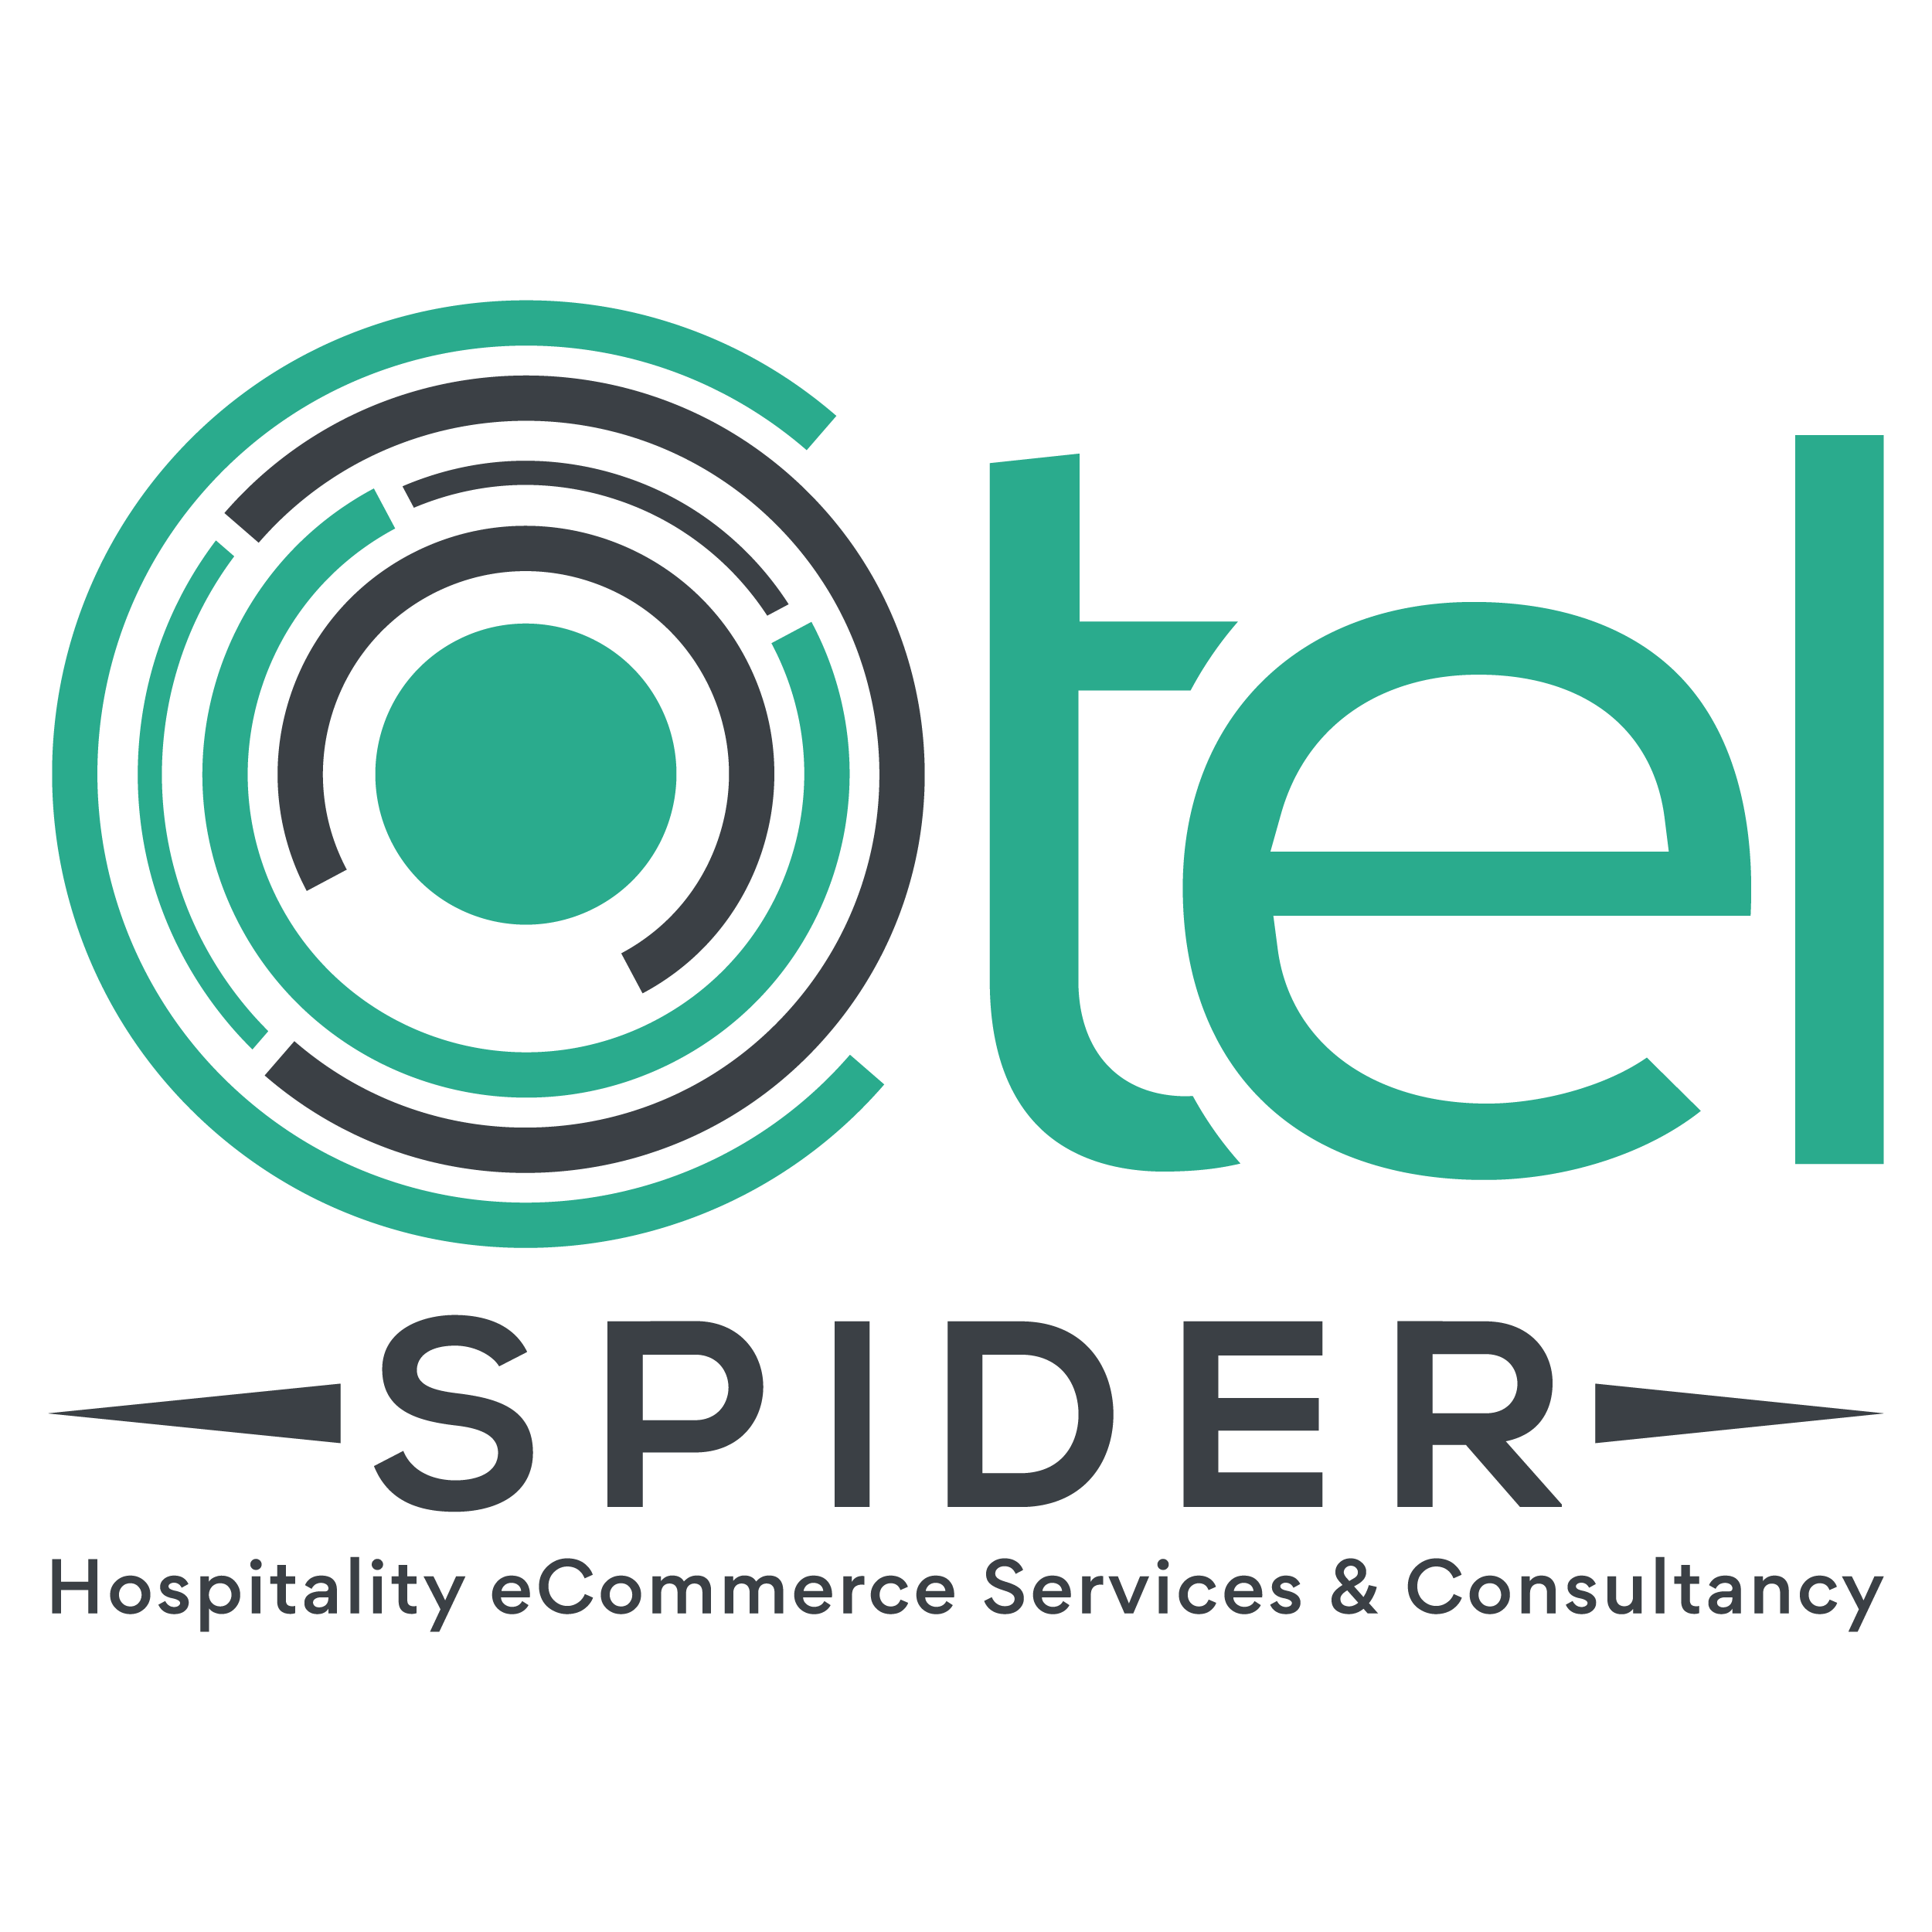 Otel-Spider-partner-Logo